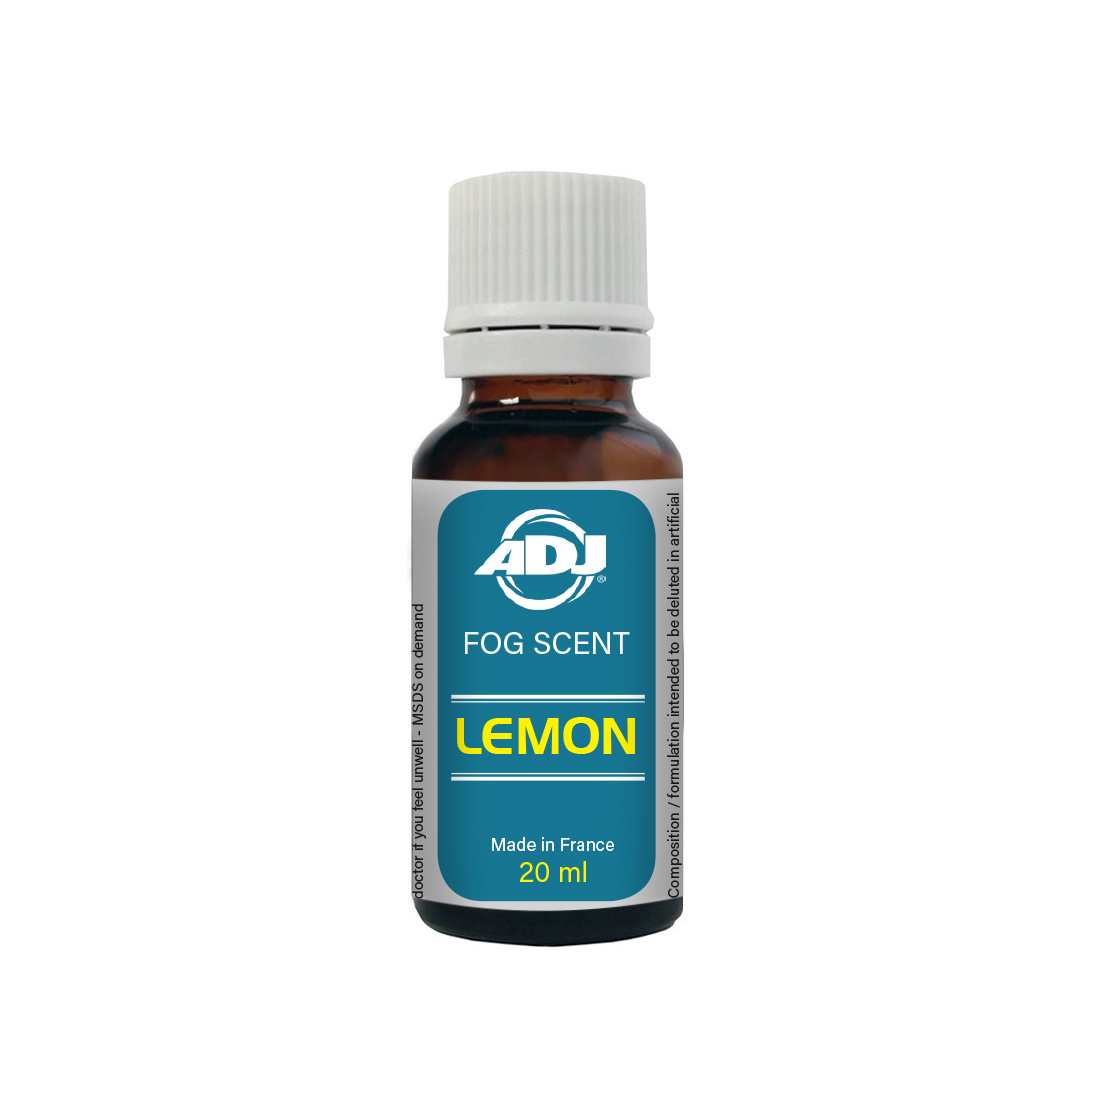 ADJ Fog Scent Lemon 20ML